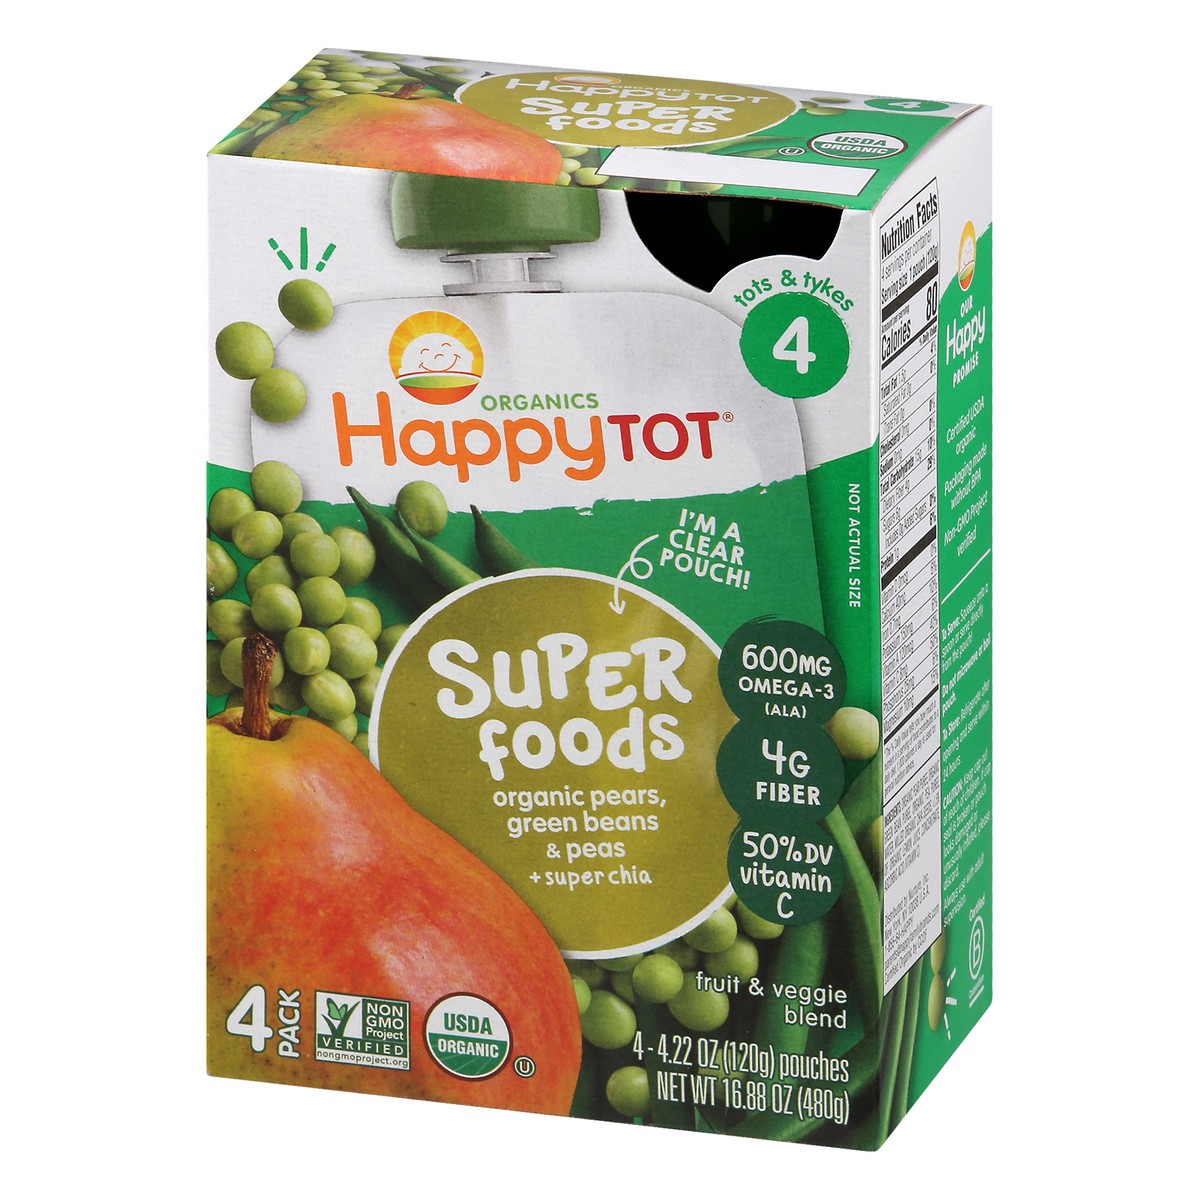 slide 8 of 12, Happy Tot Organics Super Foods 4 (Tots & Tykes) 4 Pack Organic Pears, Green Beans & Peas Fruit & Veggie Blend 4 ea, 4 ct